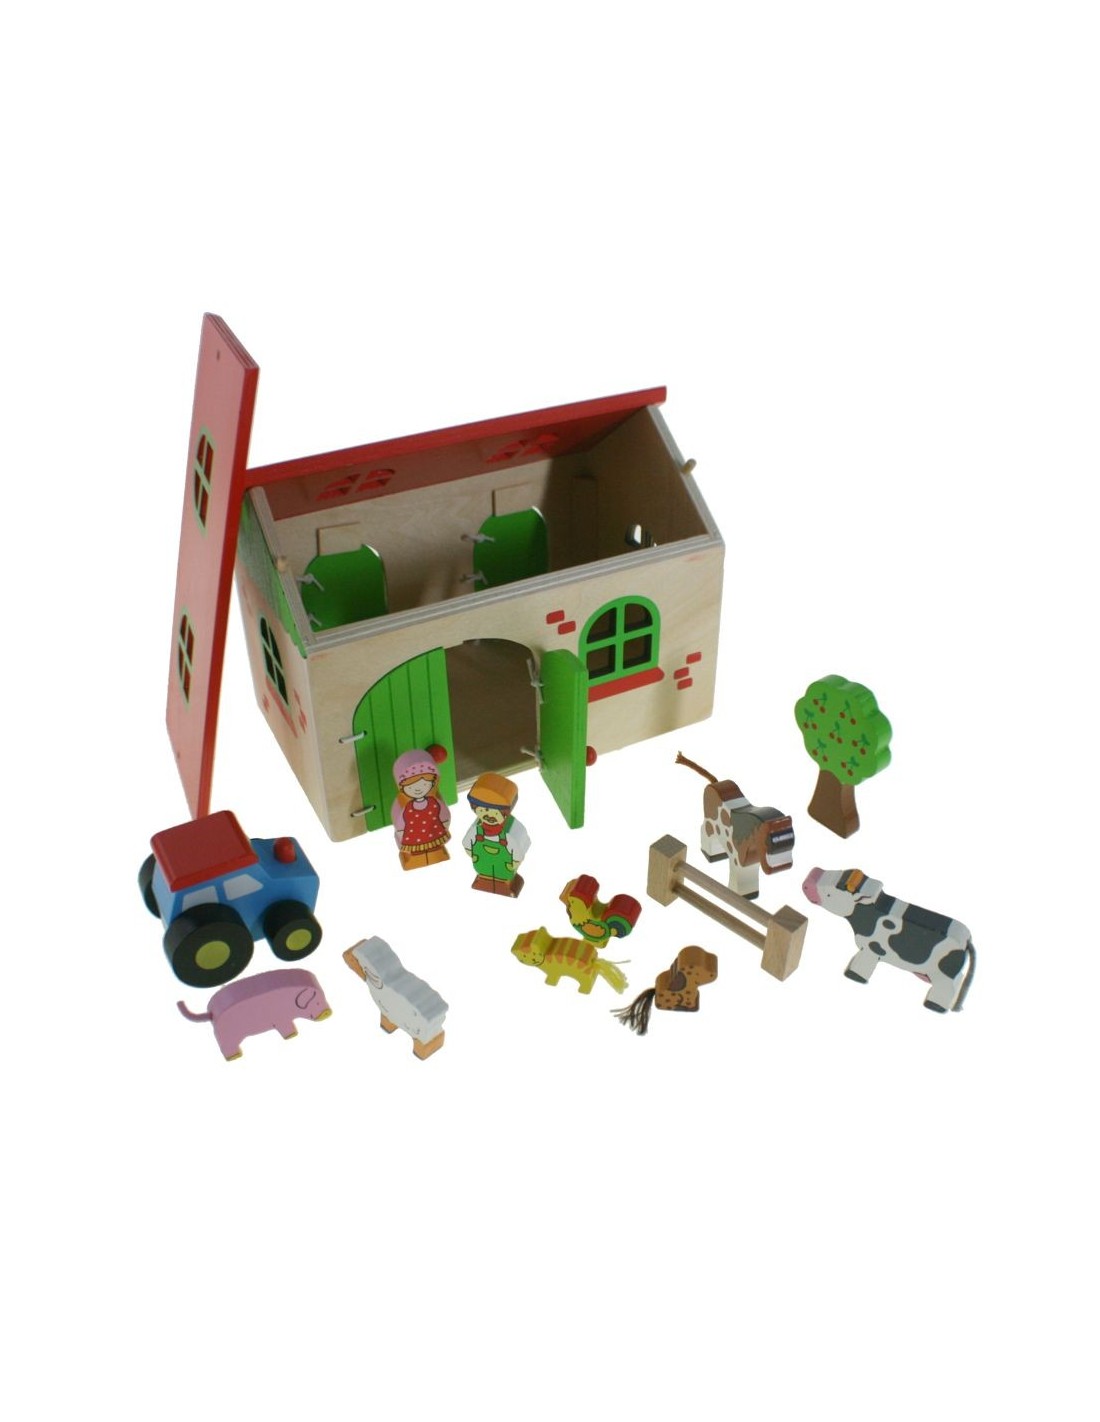 Juguete de granja de madera con figuras y accesorios de colorido con techo abatible juego infantil